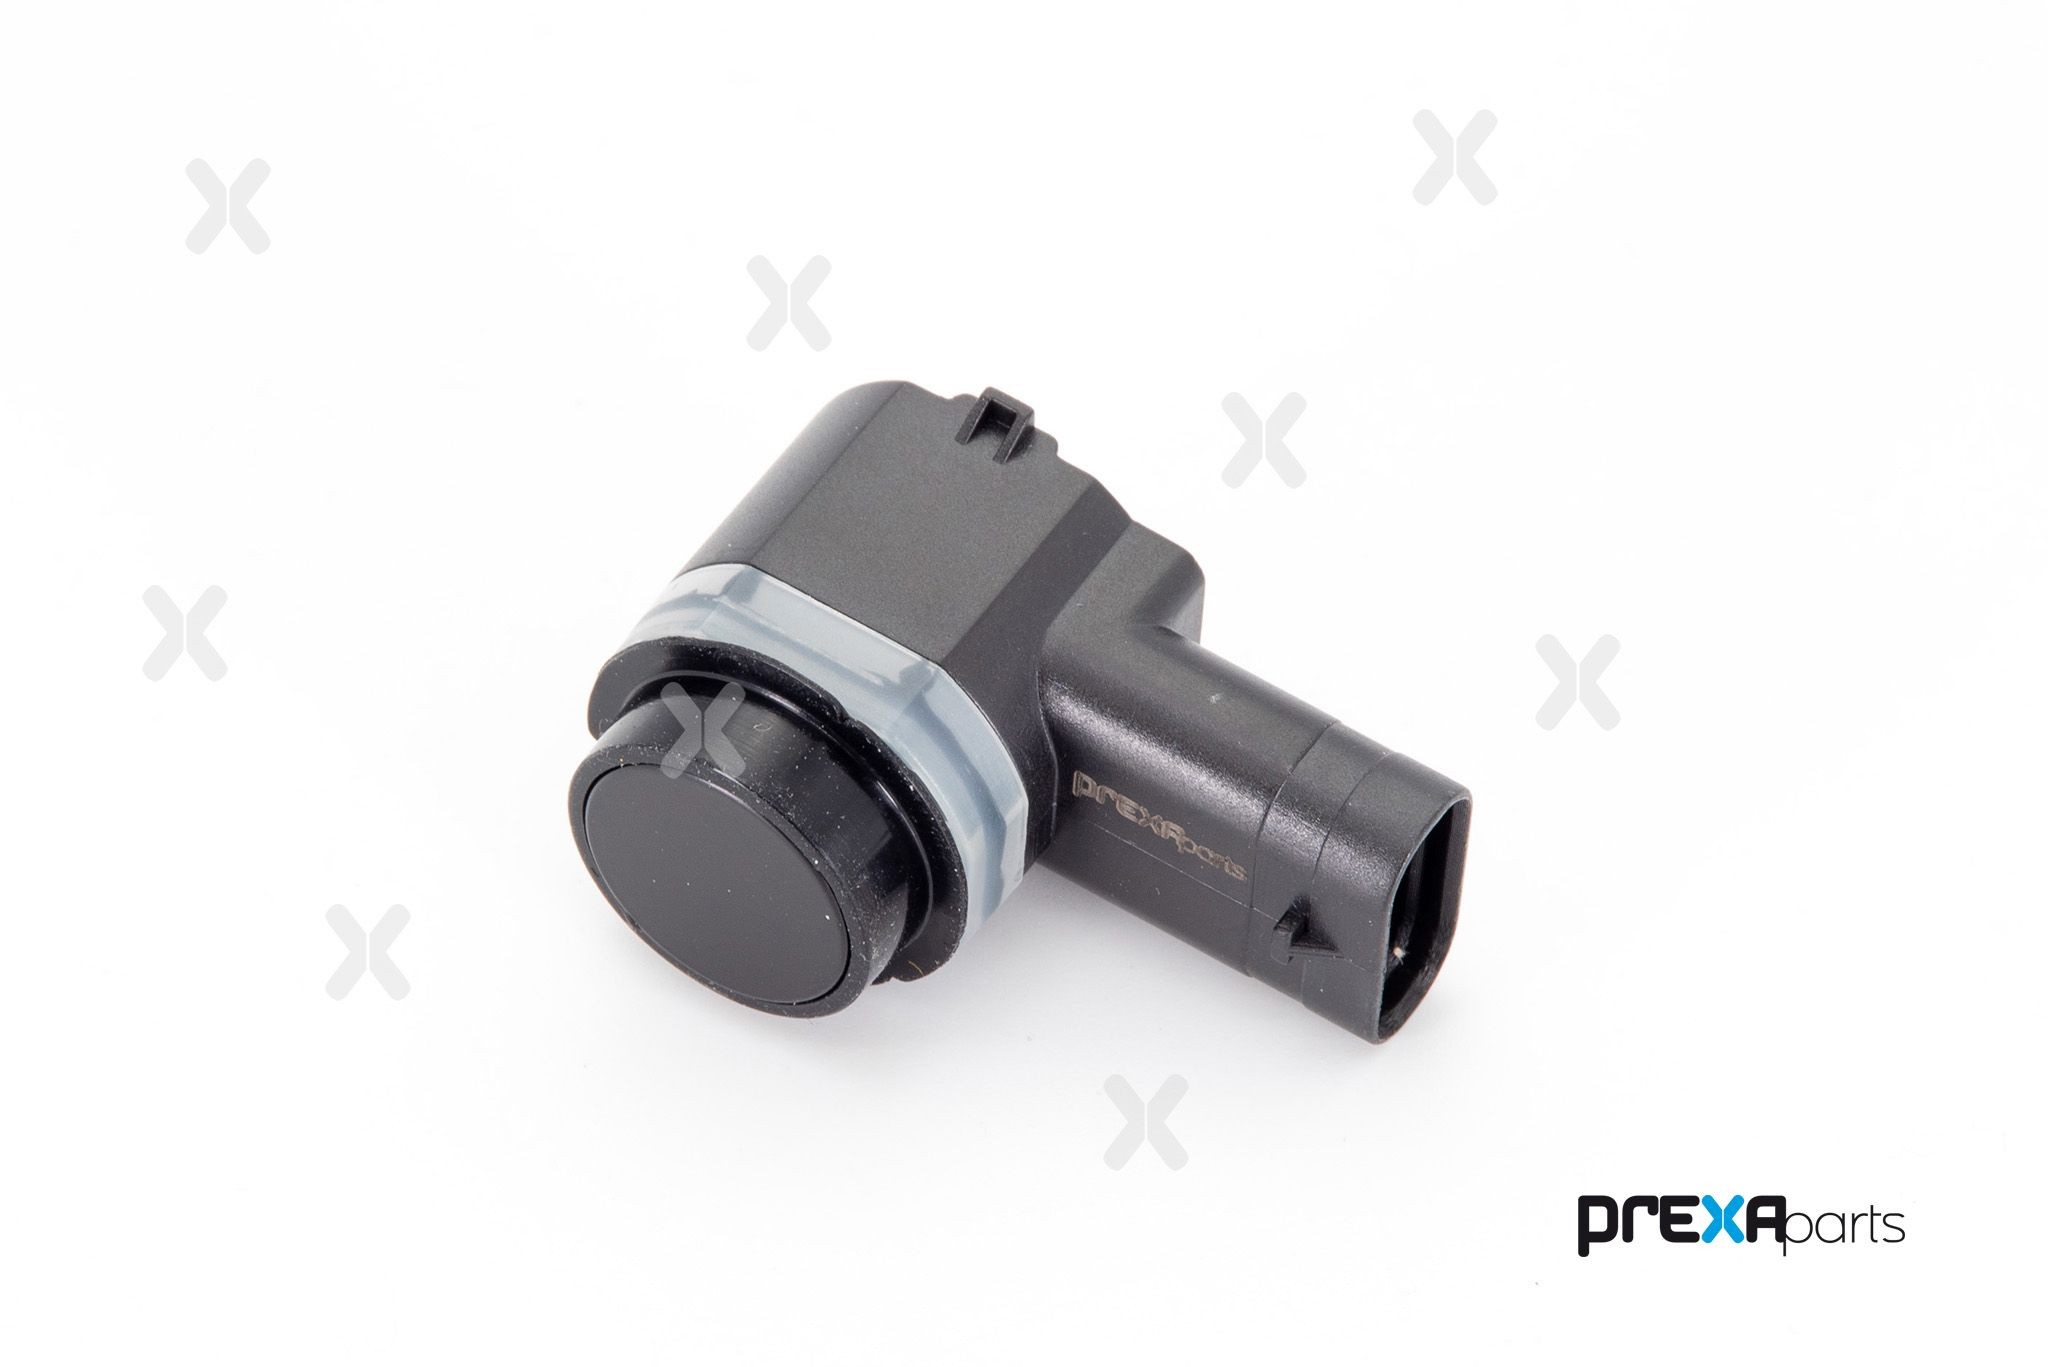 PREXAparts P703009 Parking sensor 89341 05010C0